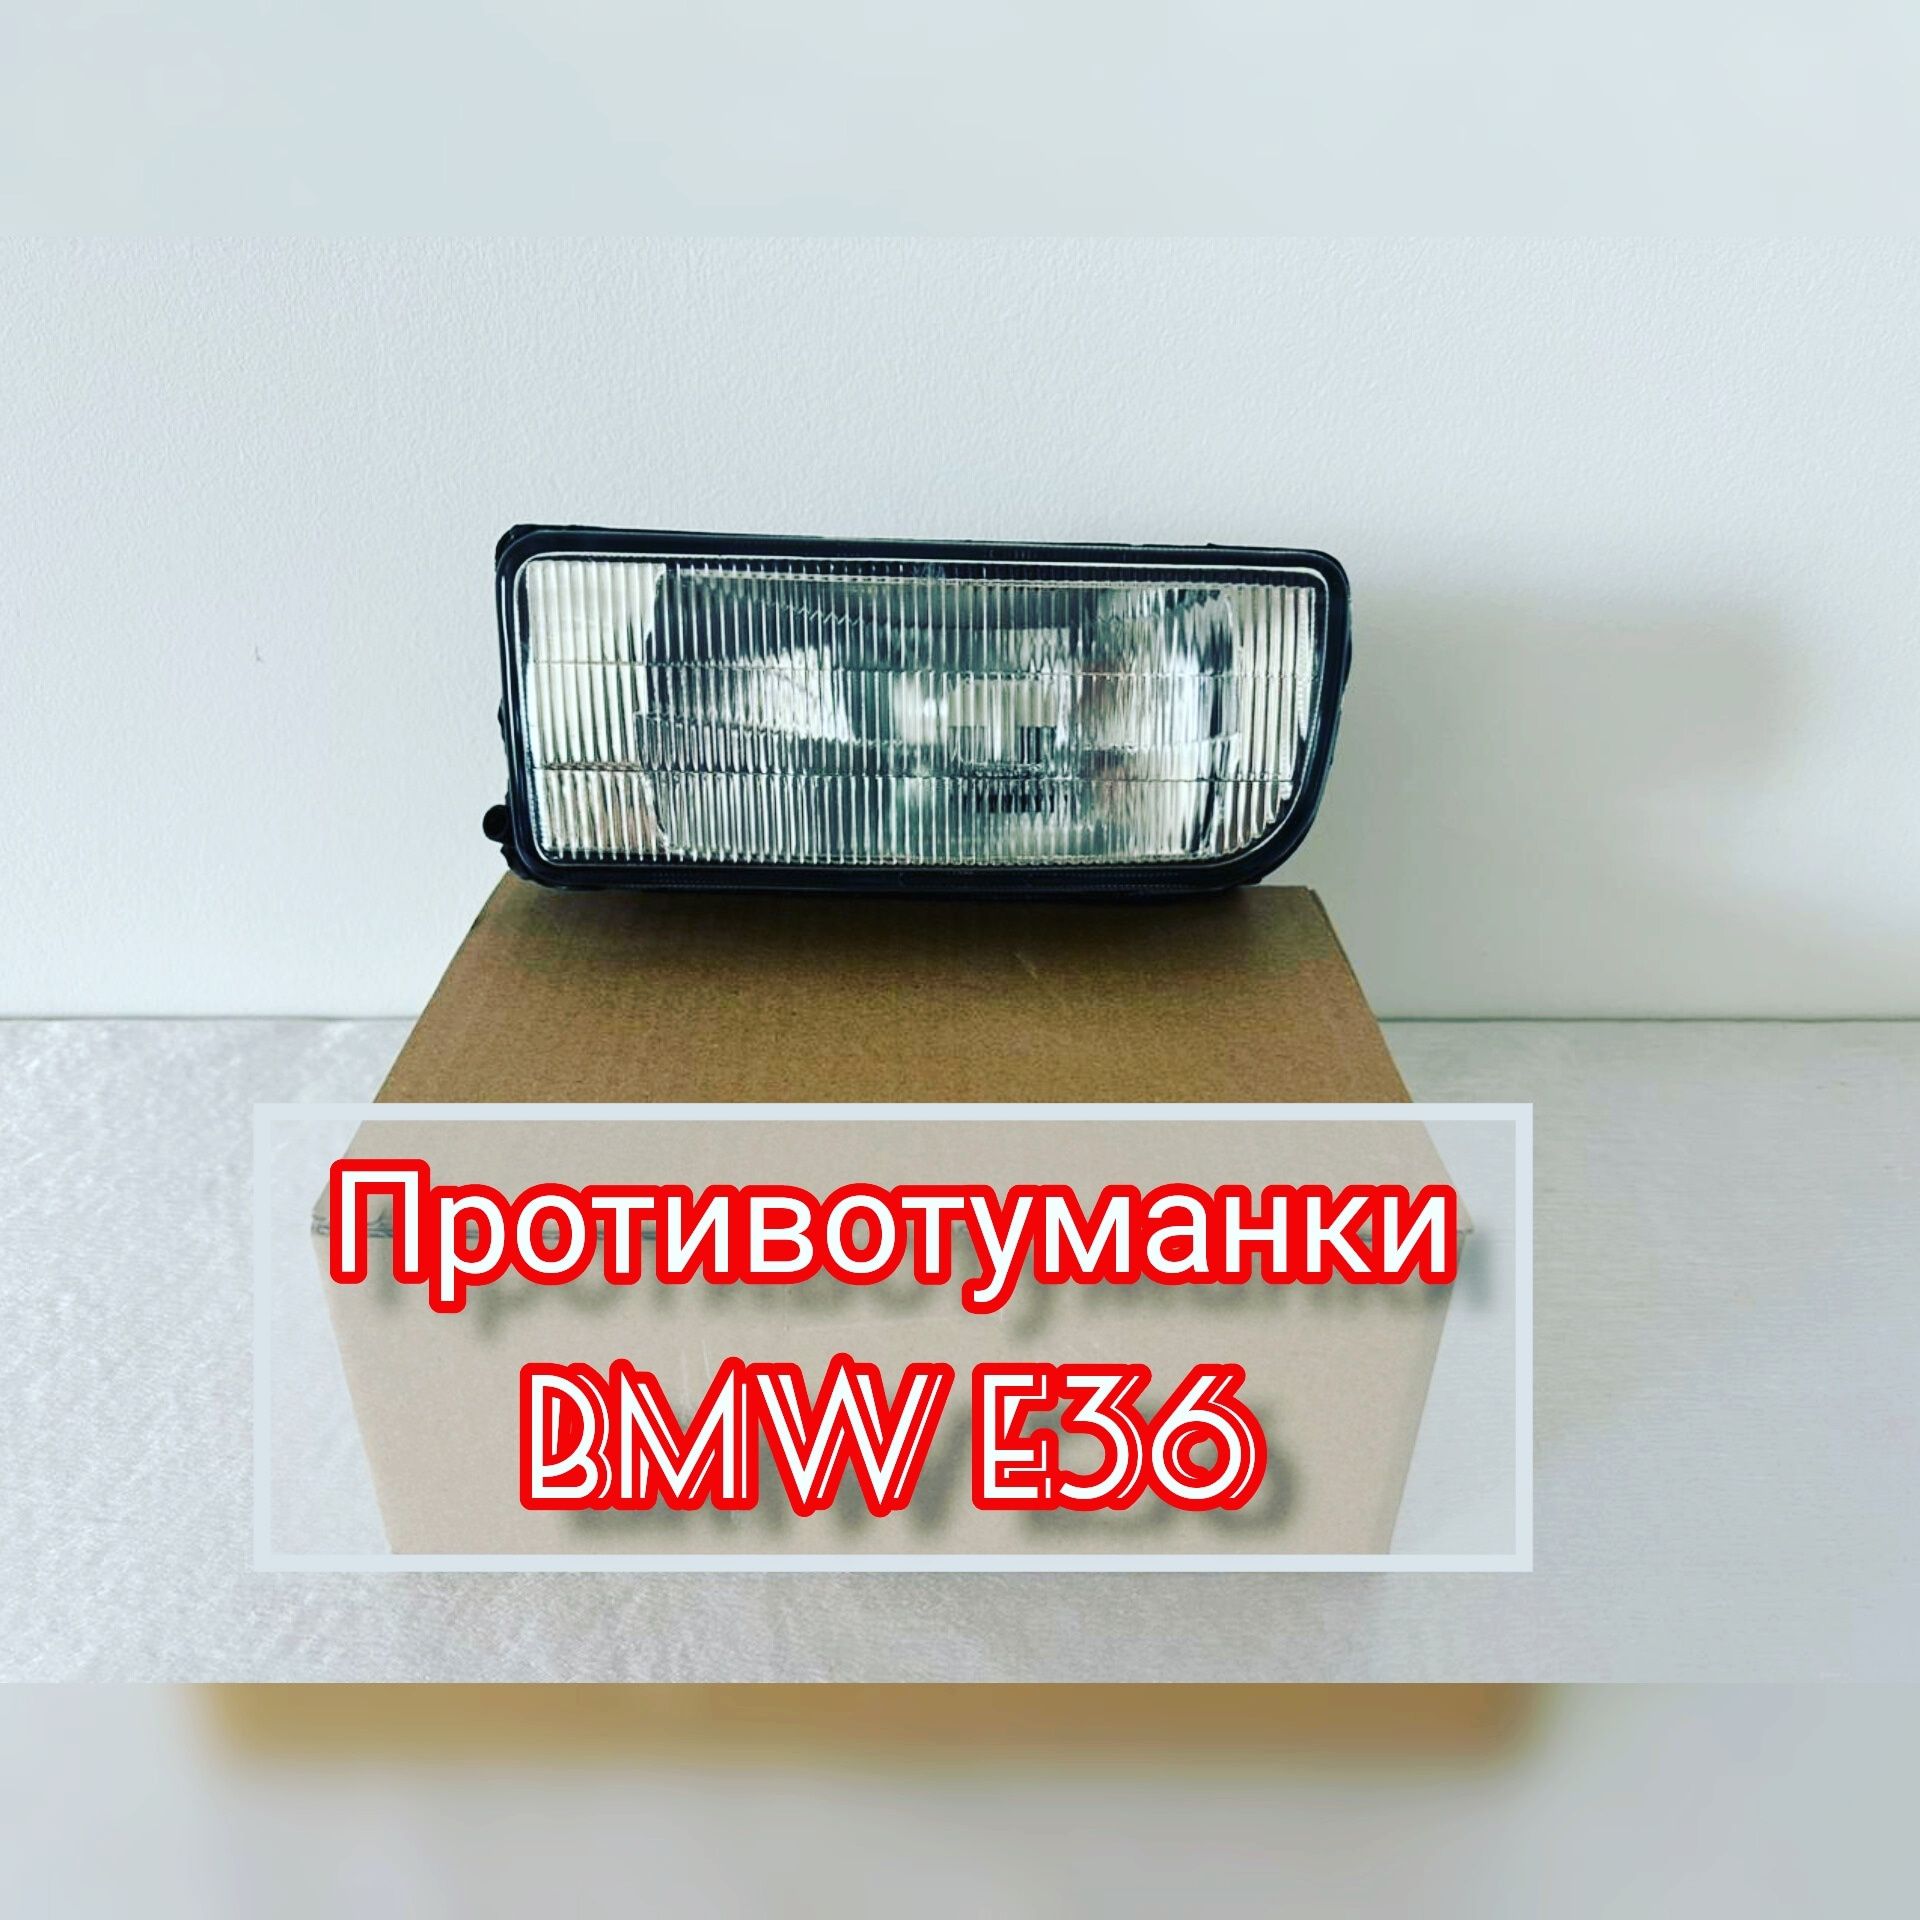 Противотуманки BMW E39, Е39М, Е34, Е36, Е38